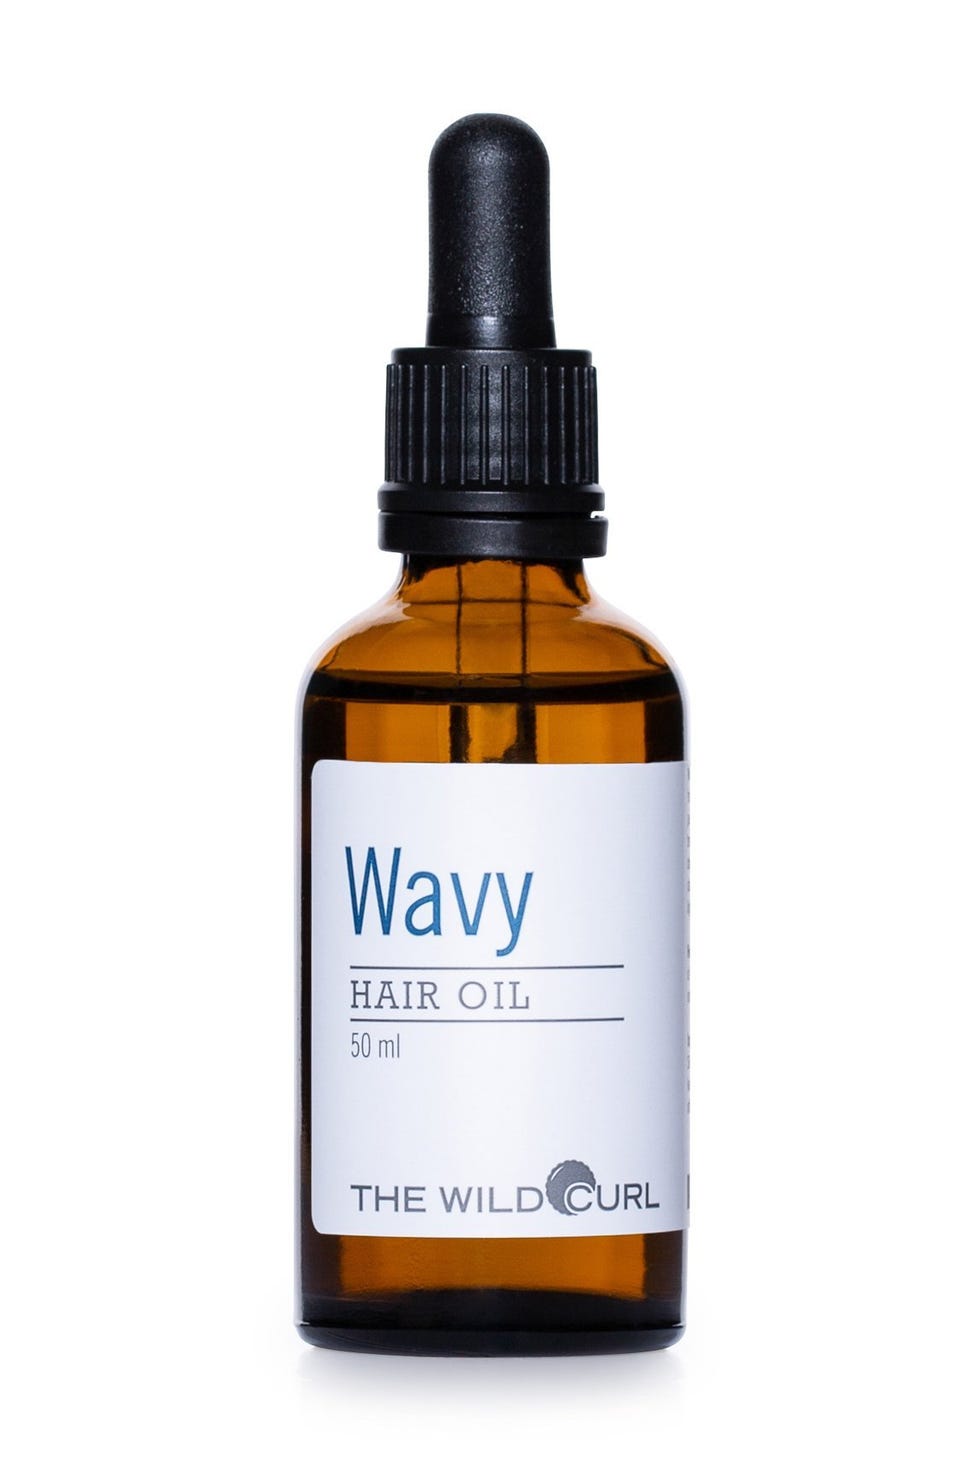 The Wild Curl Wavy Hair Oil